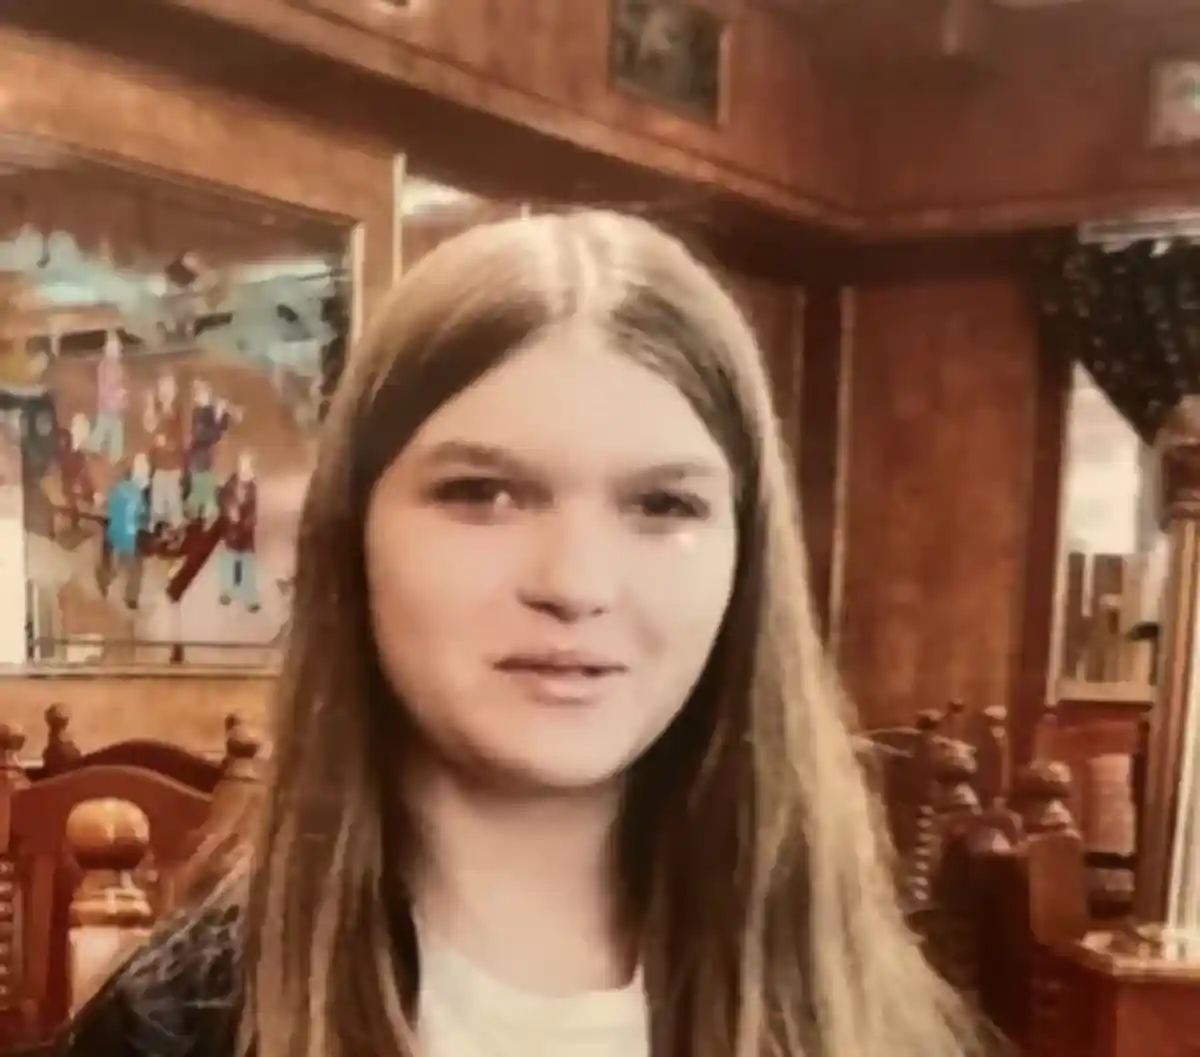 Пропала 15-летняя девочка Лиза В. Фото: https://www.presseportal.de/blaulicht/pm/44143/5113831